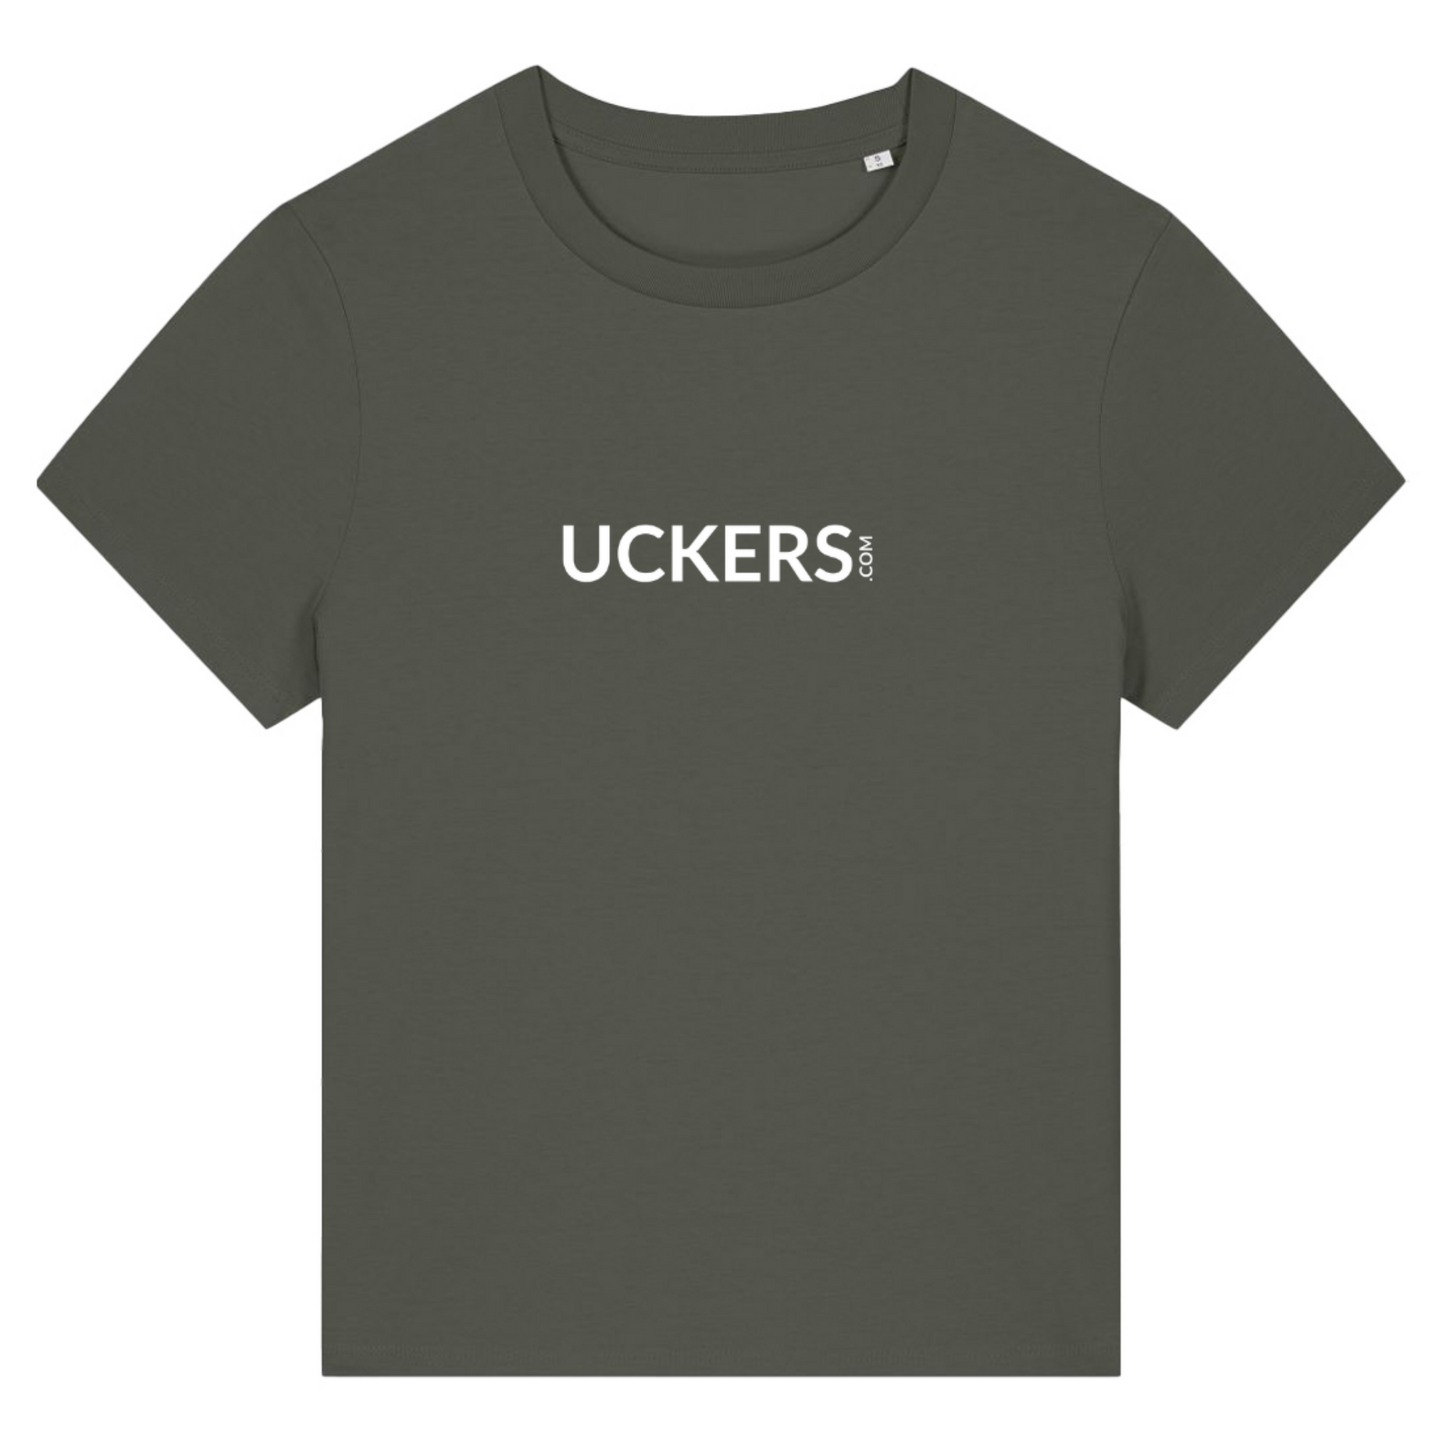 Uckers Motif Women's Colourful T-shirt